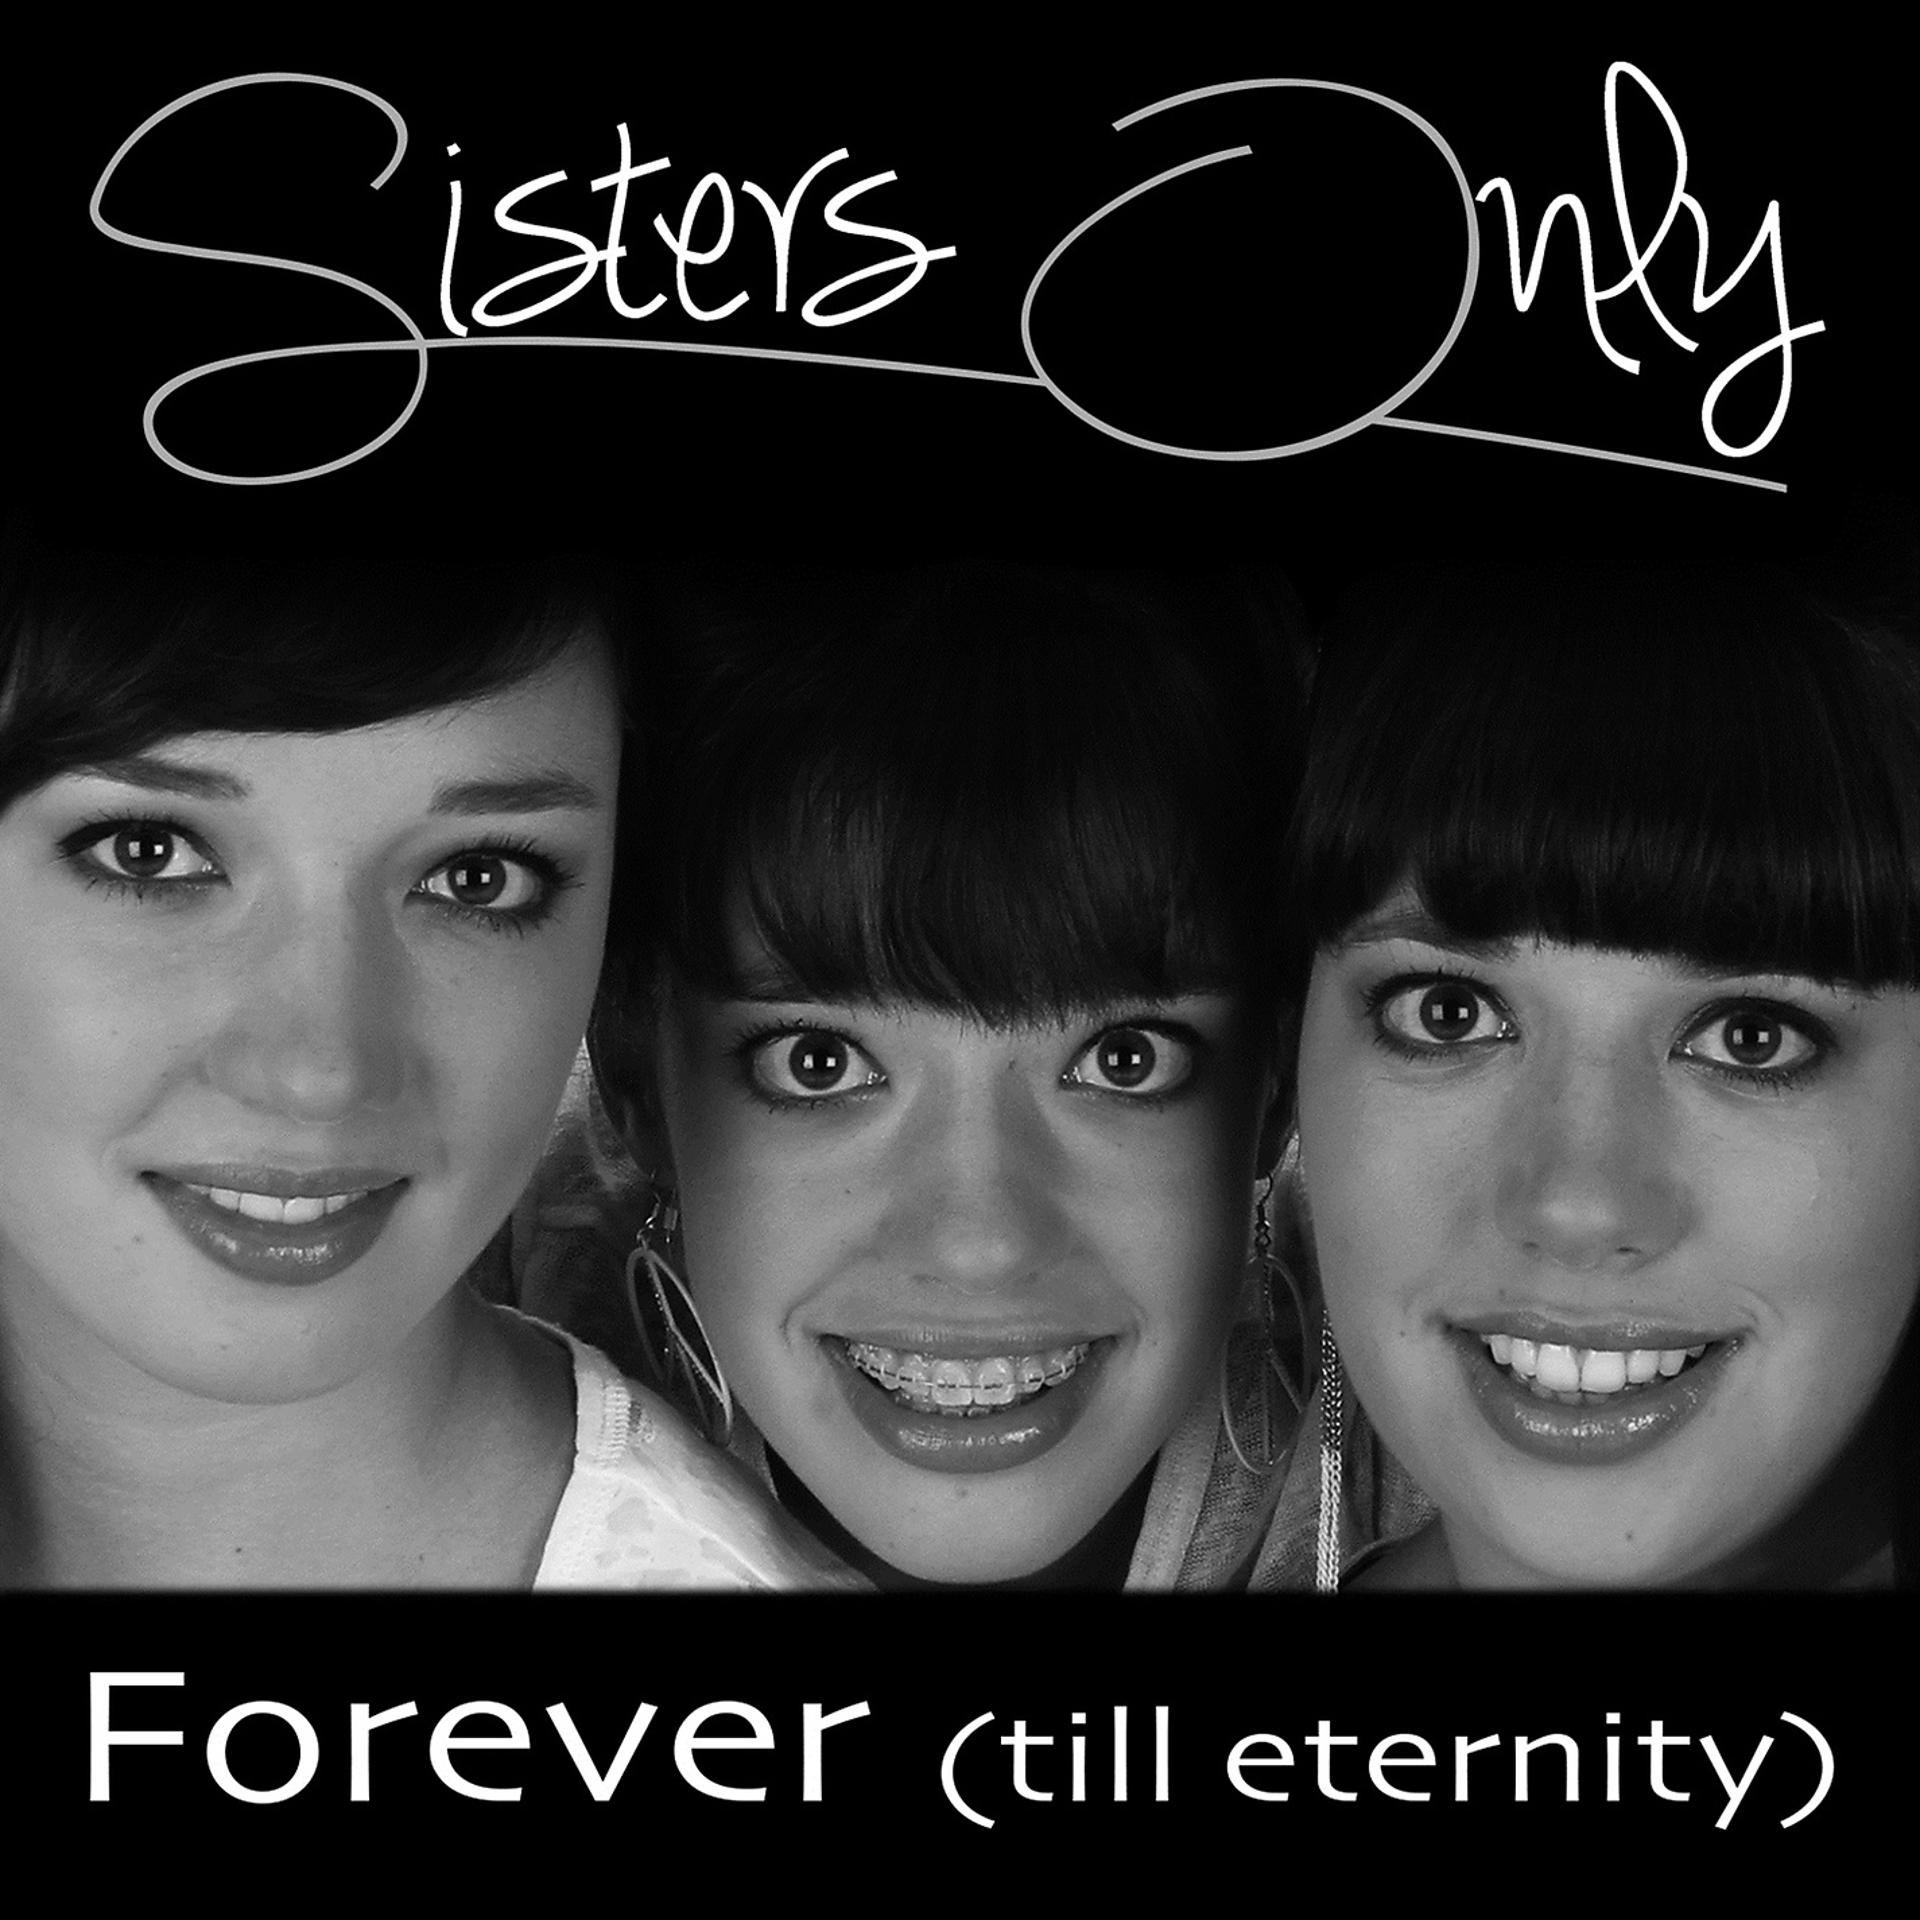 Sisters песня перевод. Песня only Forever. Сестры музыка. Песня форева ю слушать.